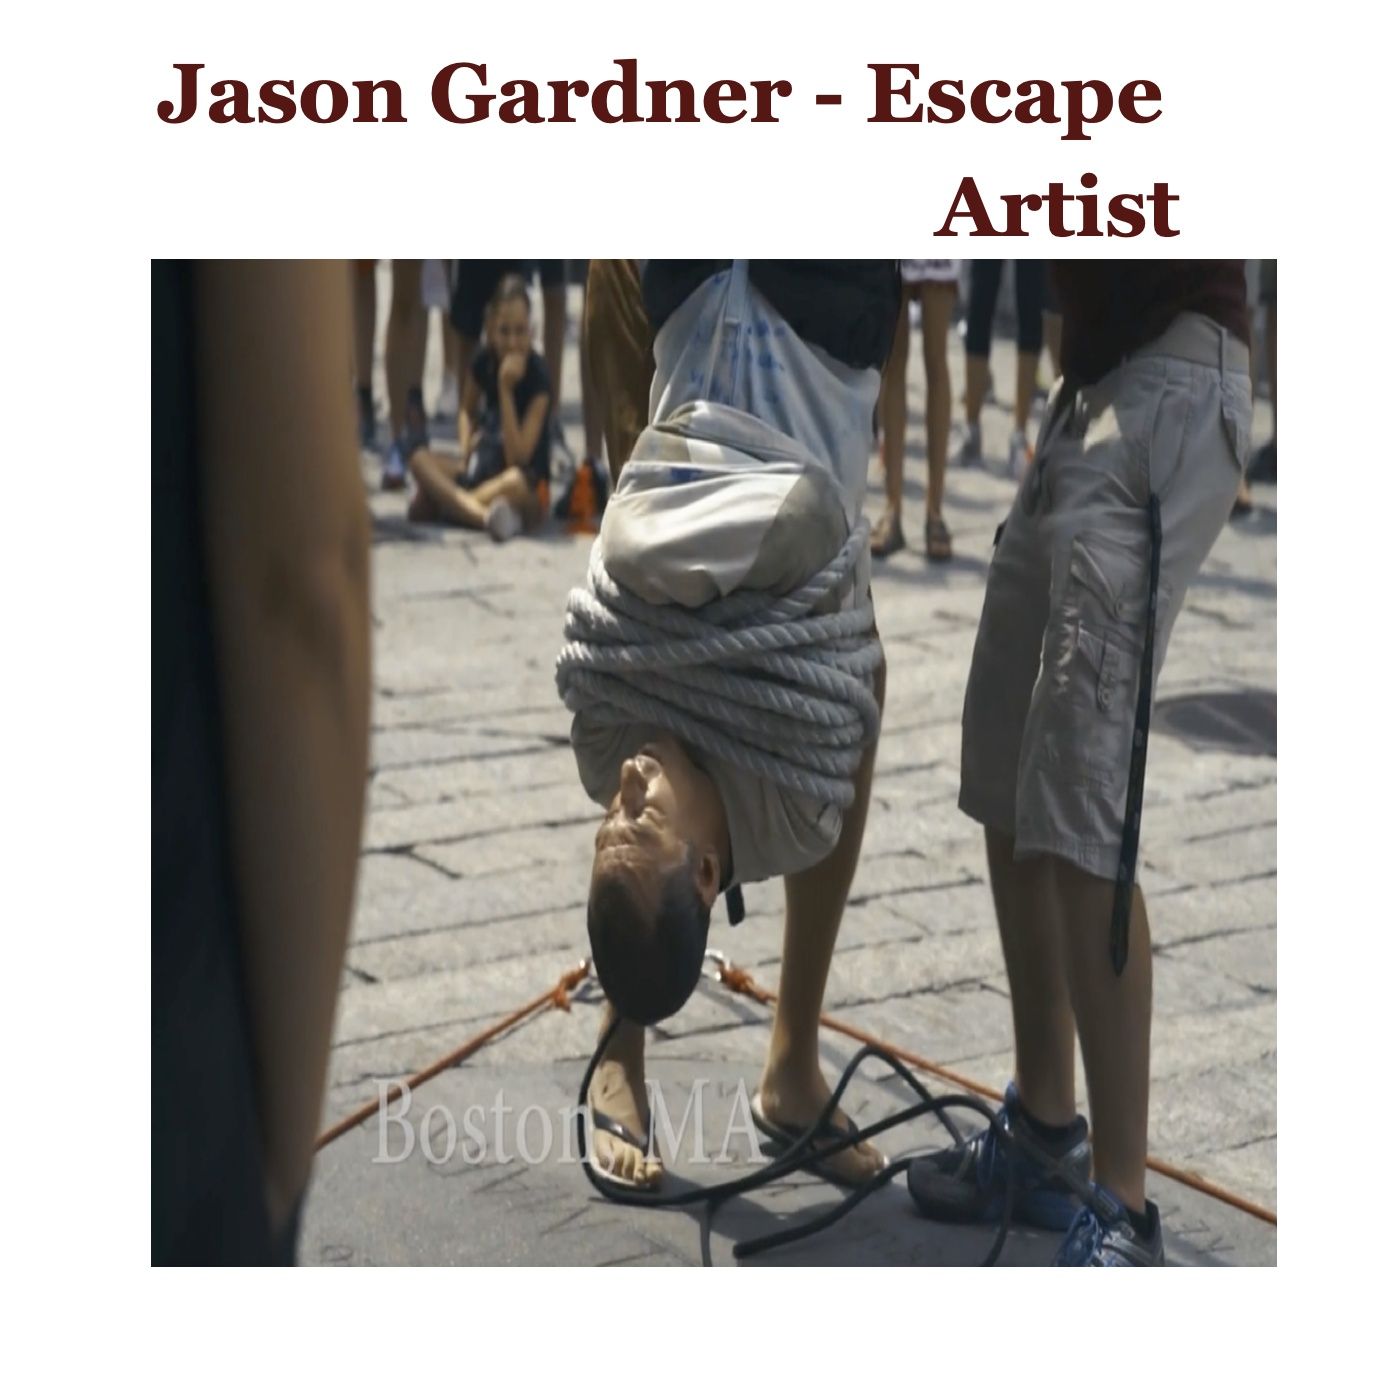 Jason Gardner - Escape Artist